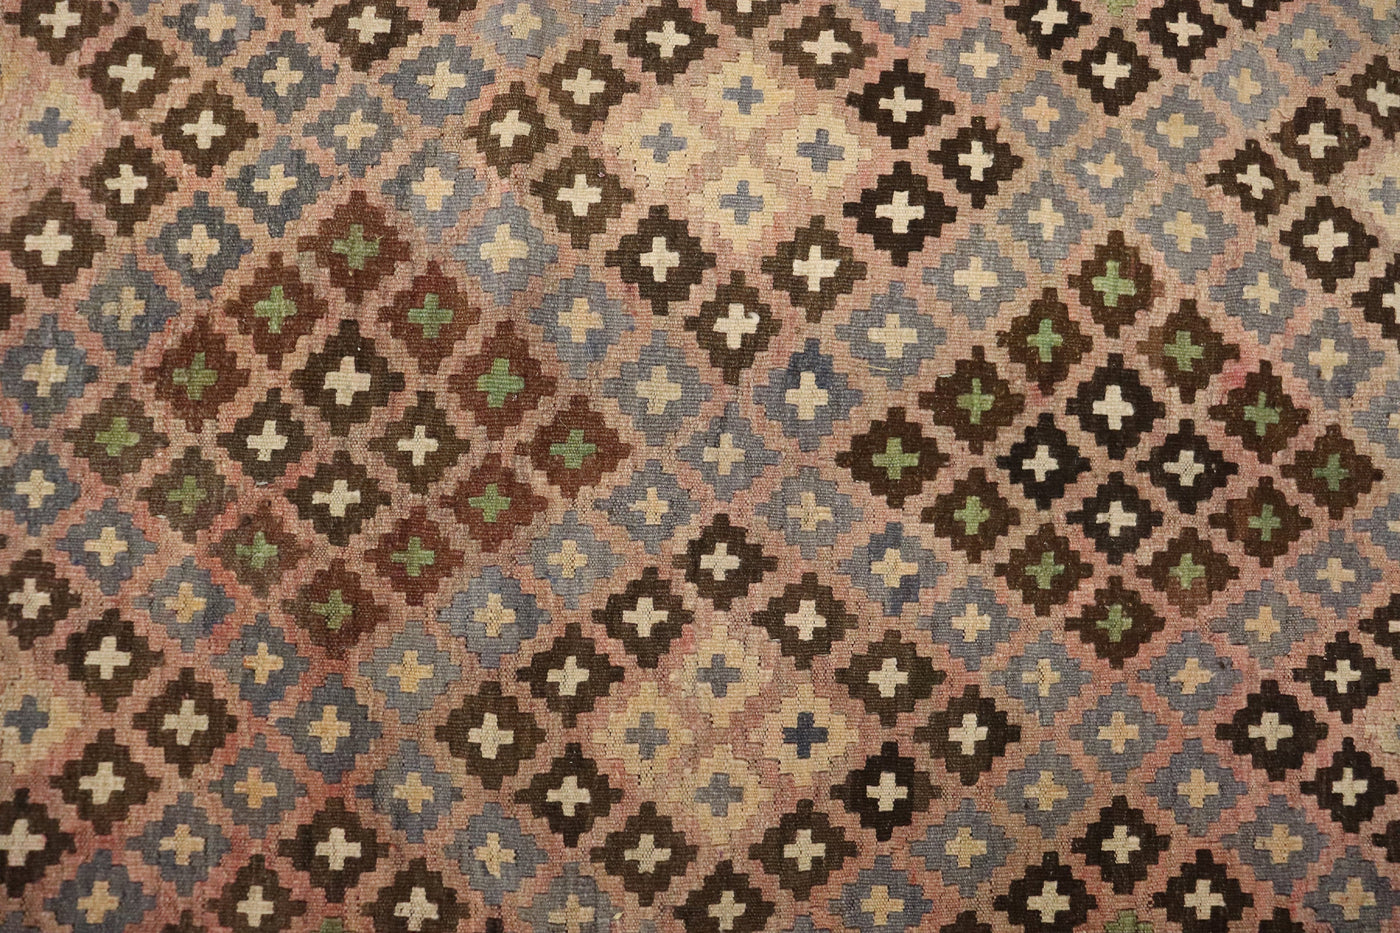 295x215 cm orient handgewebte Teppich Afghan Uzbek Nomaden Planzenfarbe kelim kilim No:238 Teppiche Orientsbazar   